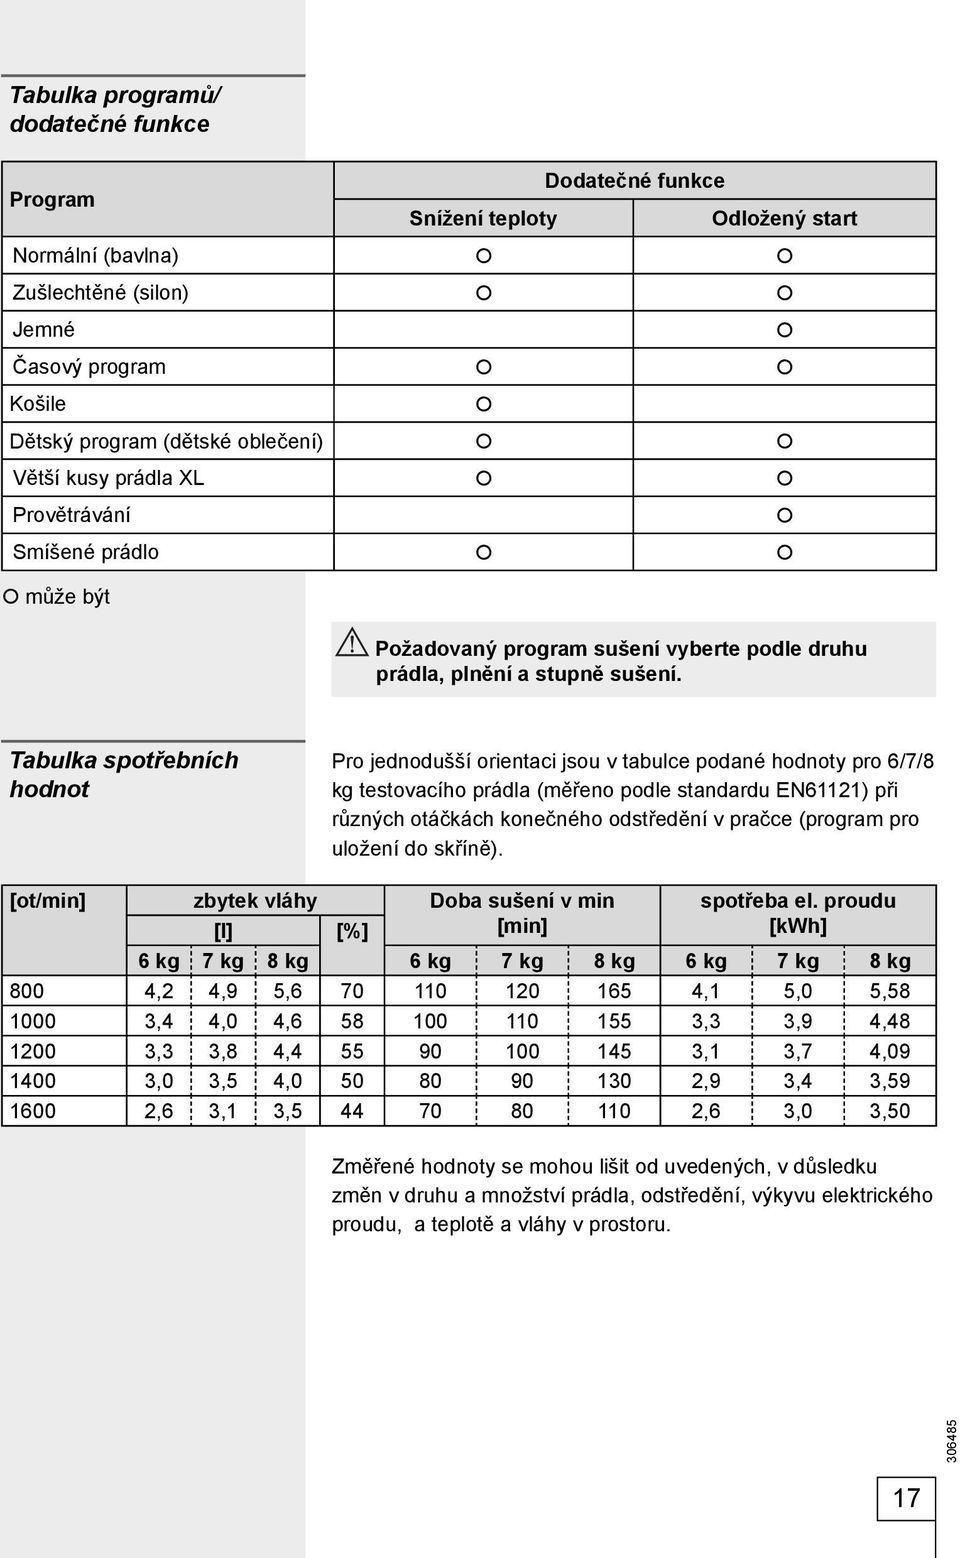 Tabulka spotřebních hodnot Pro jednodušší orientaci jsou v tabulce podané hodnoty pro 6/7/8 kg testovacího prádla (měřeno podle standardu EN61121) při různých otáčkách konečného odstředění v pračce